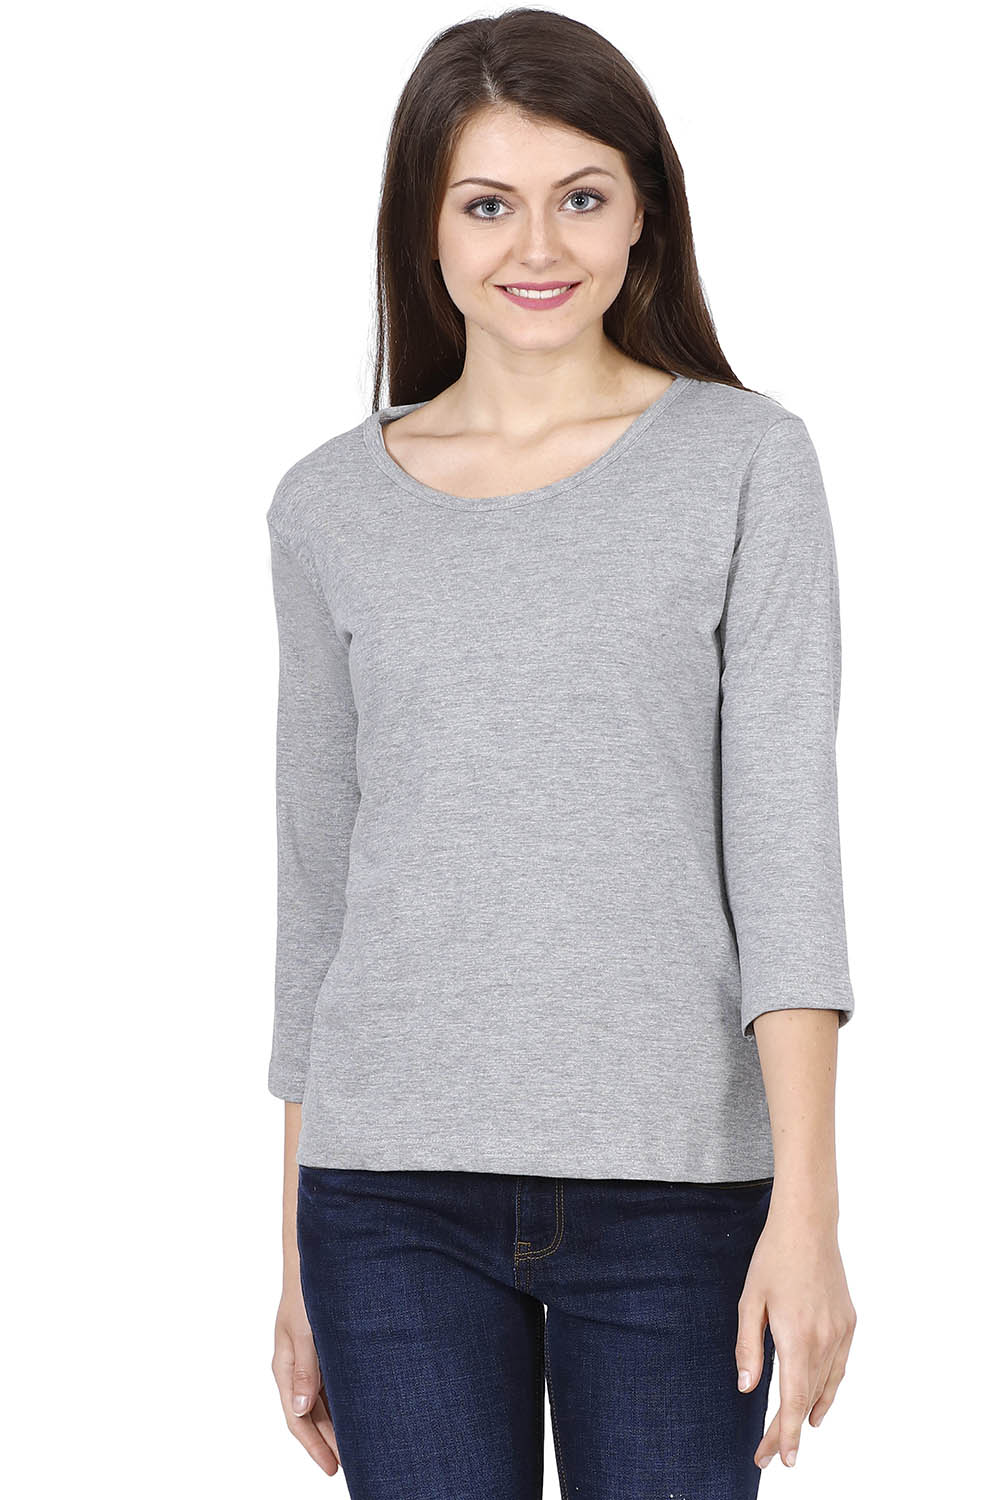 Women's Solid Gray 3/4 Sleeve T-shirt - meltmoon.com